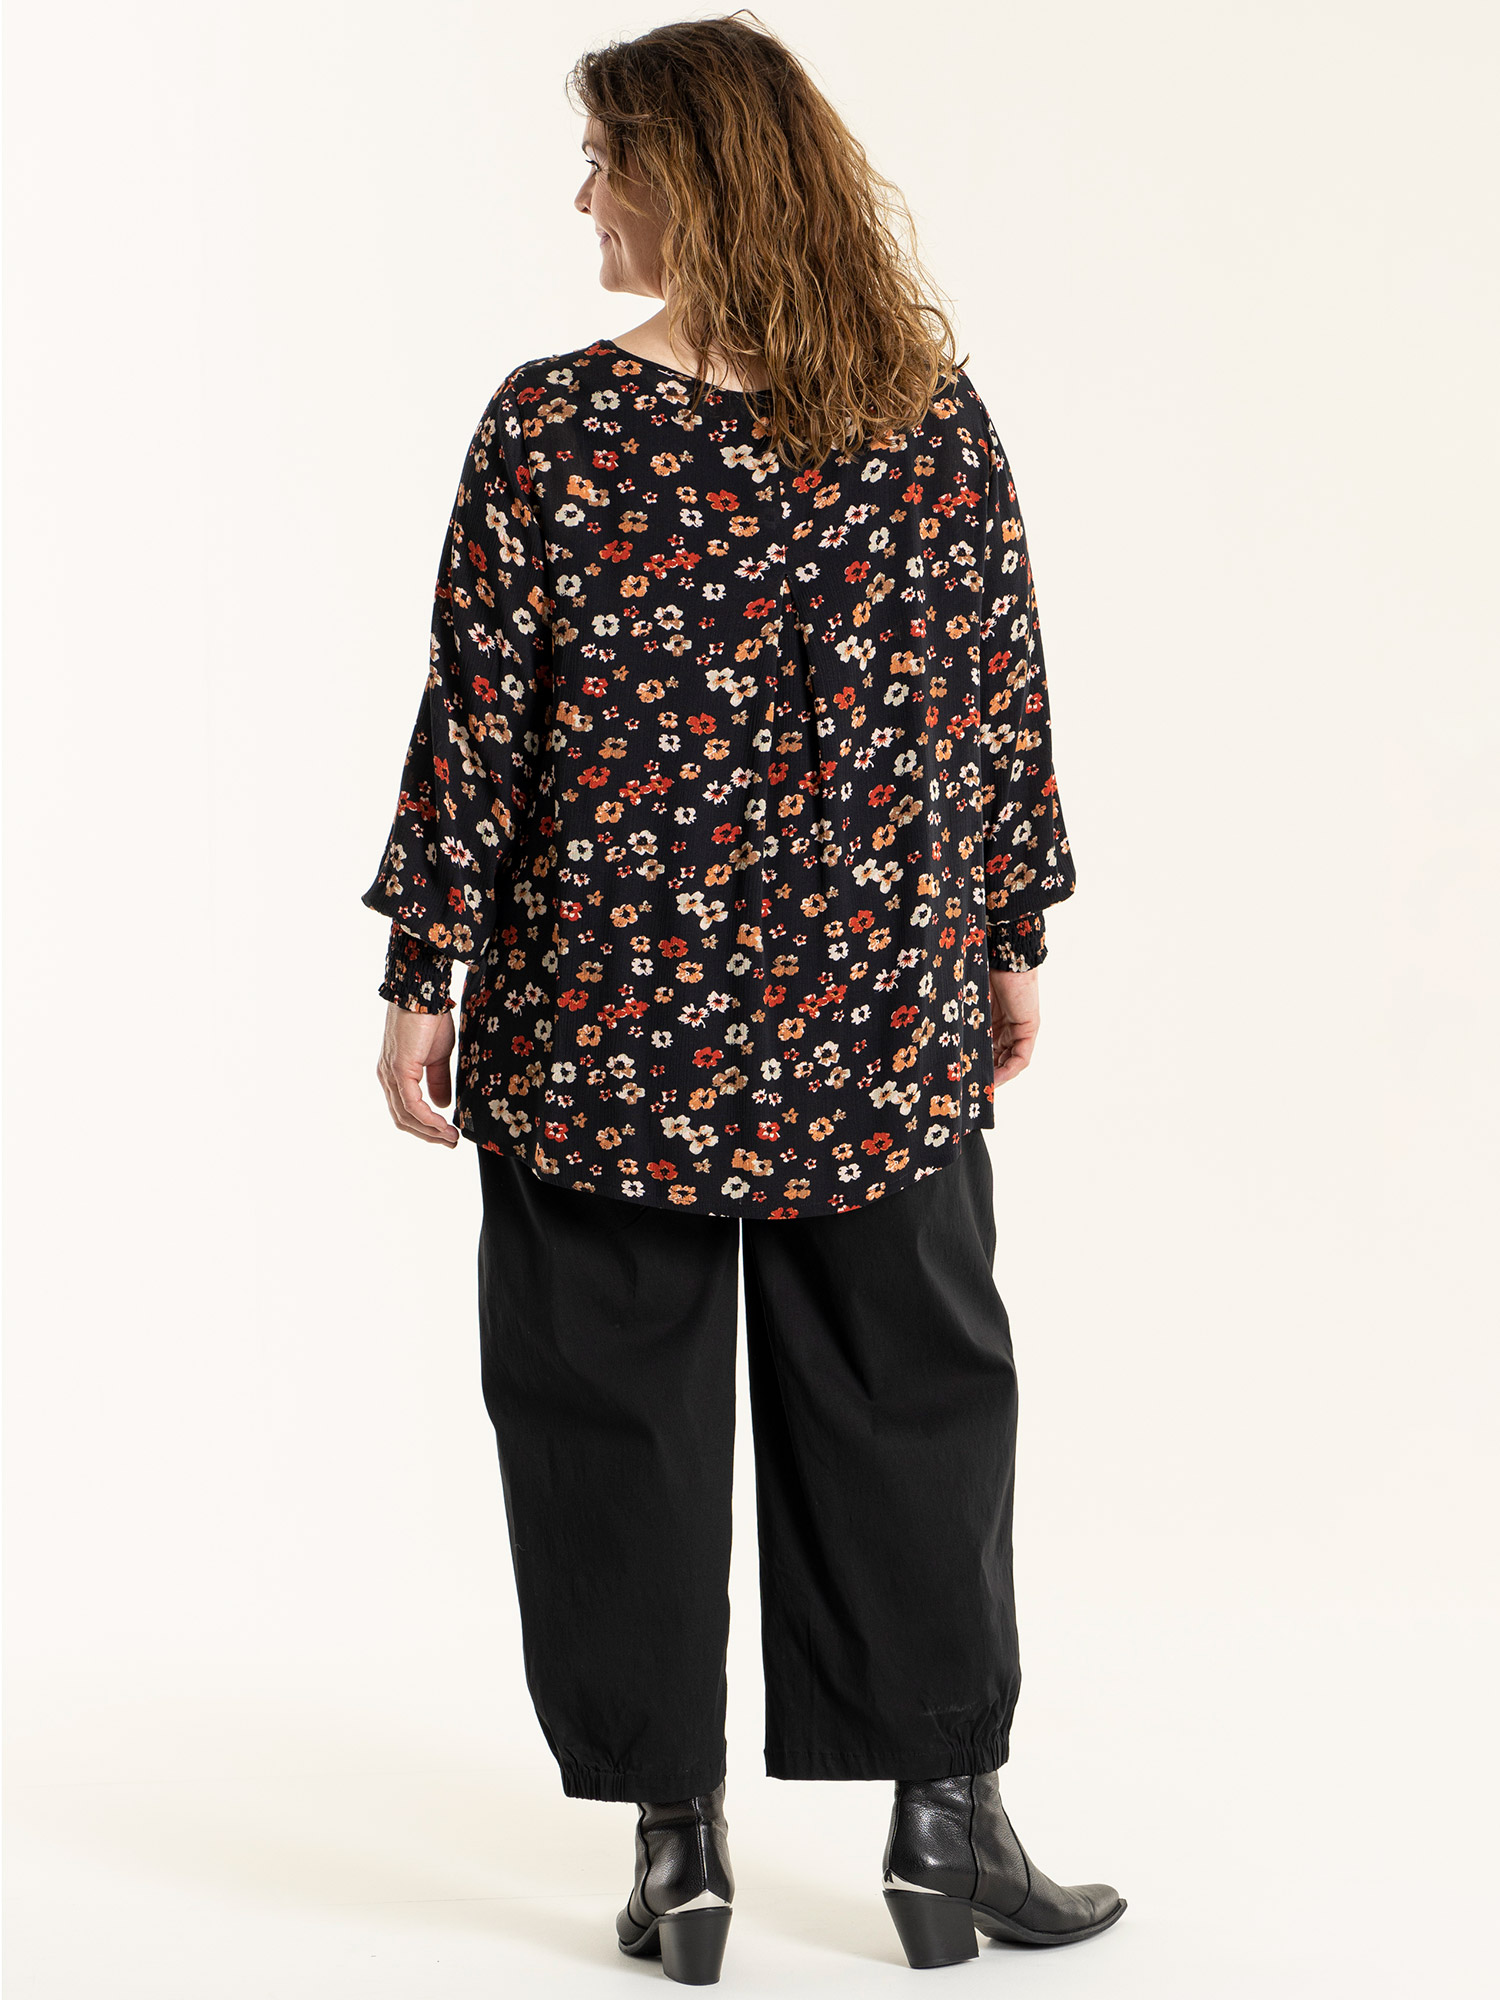 NATACHA - Sort bluse i crepet viskose med blomster print fra Gozzip